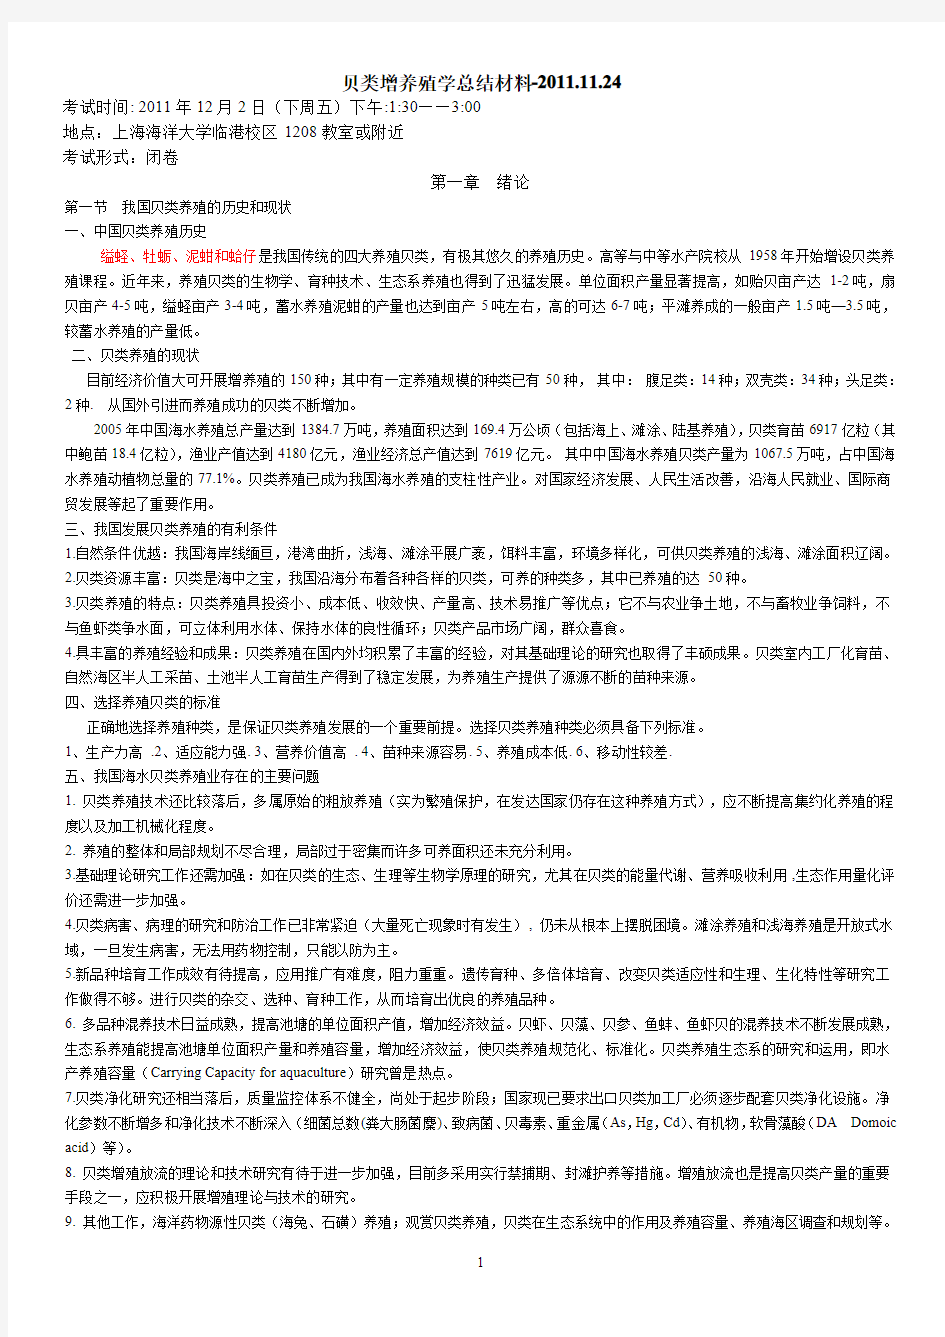 贝类增养殖学总结材料(2011)  上海海洋大学